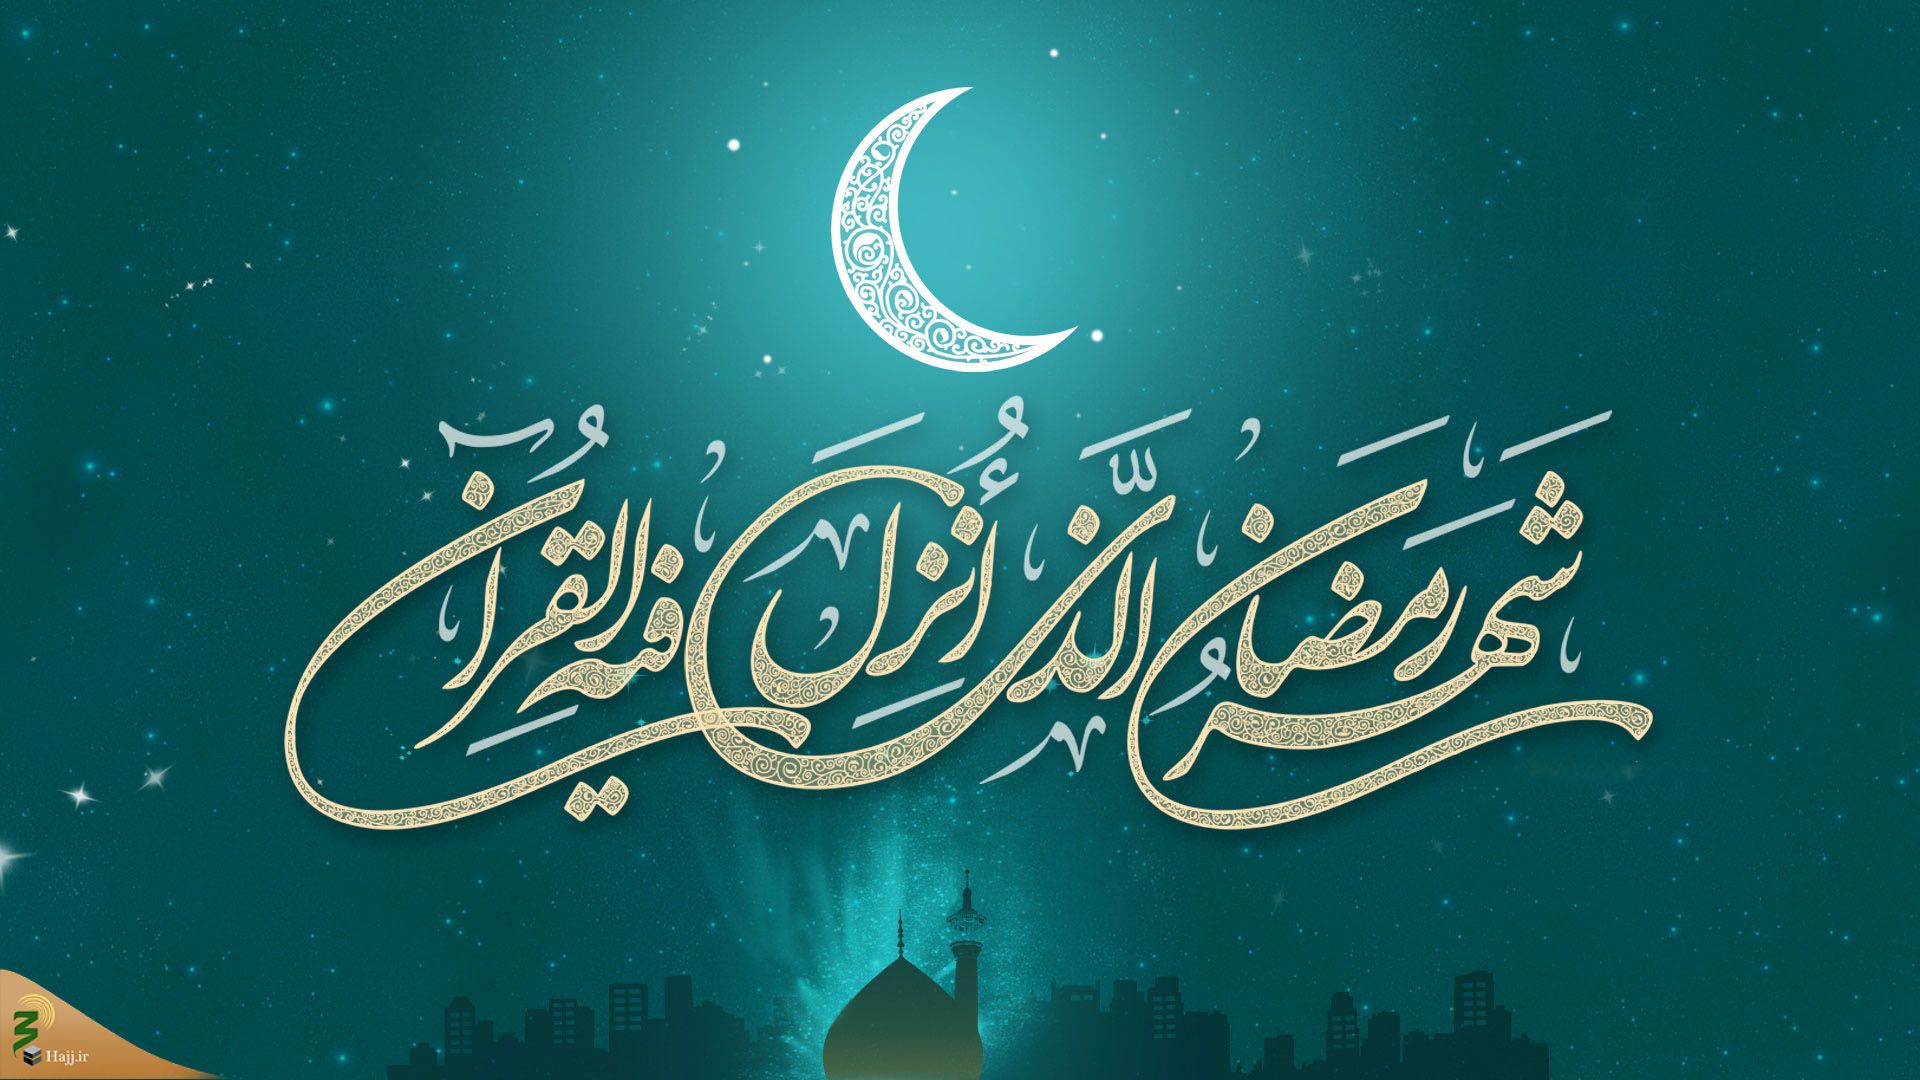 تاریخ  شروع ماه رمضان ۱۴۰۱ / ماه رمضان ۱۴۰۱ چند شنبه است؟